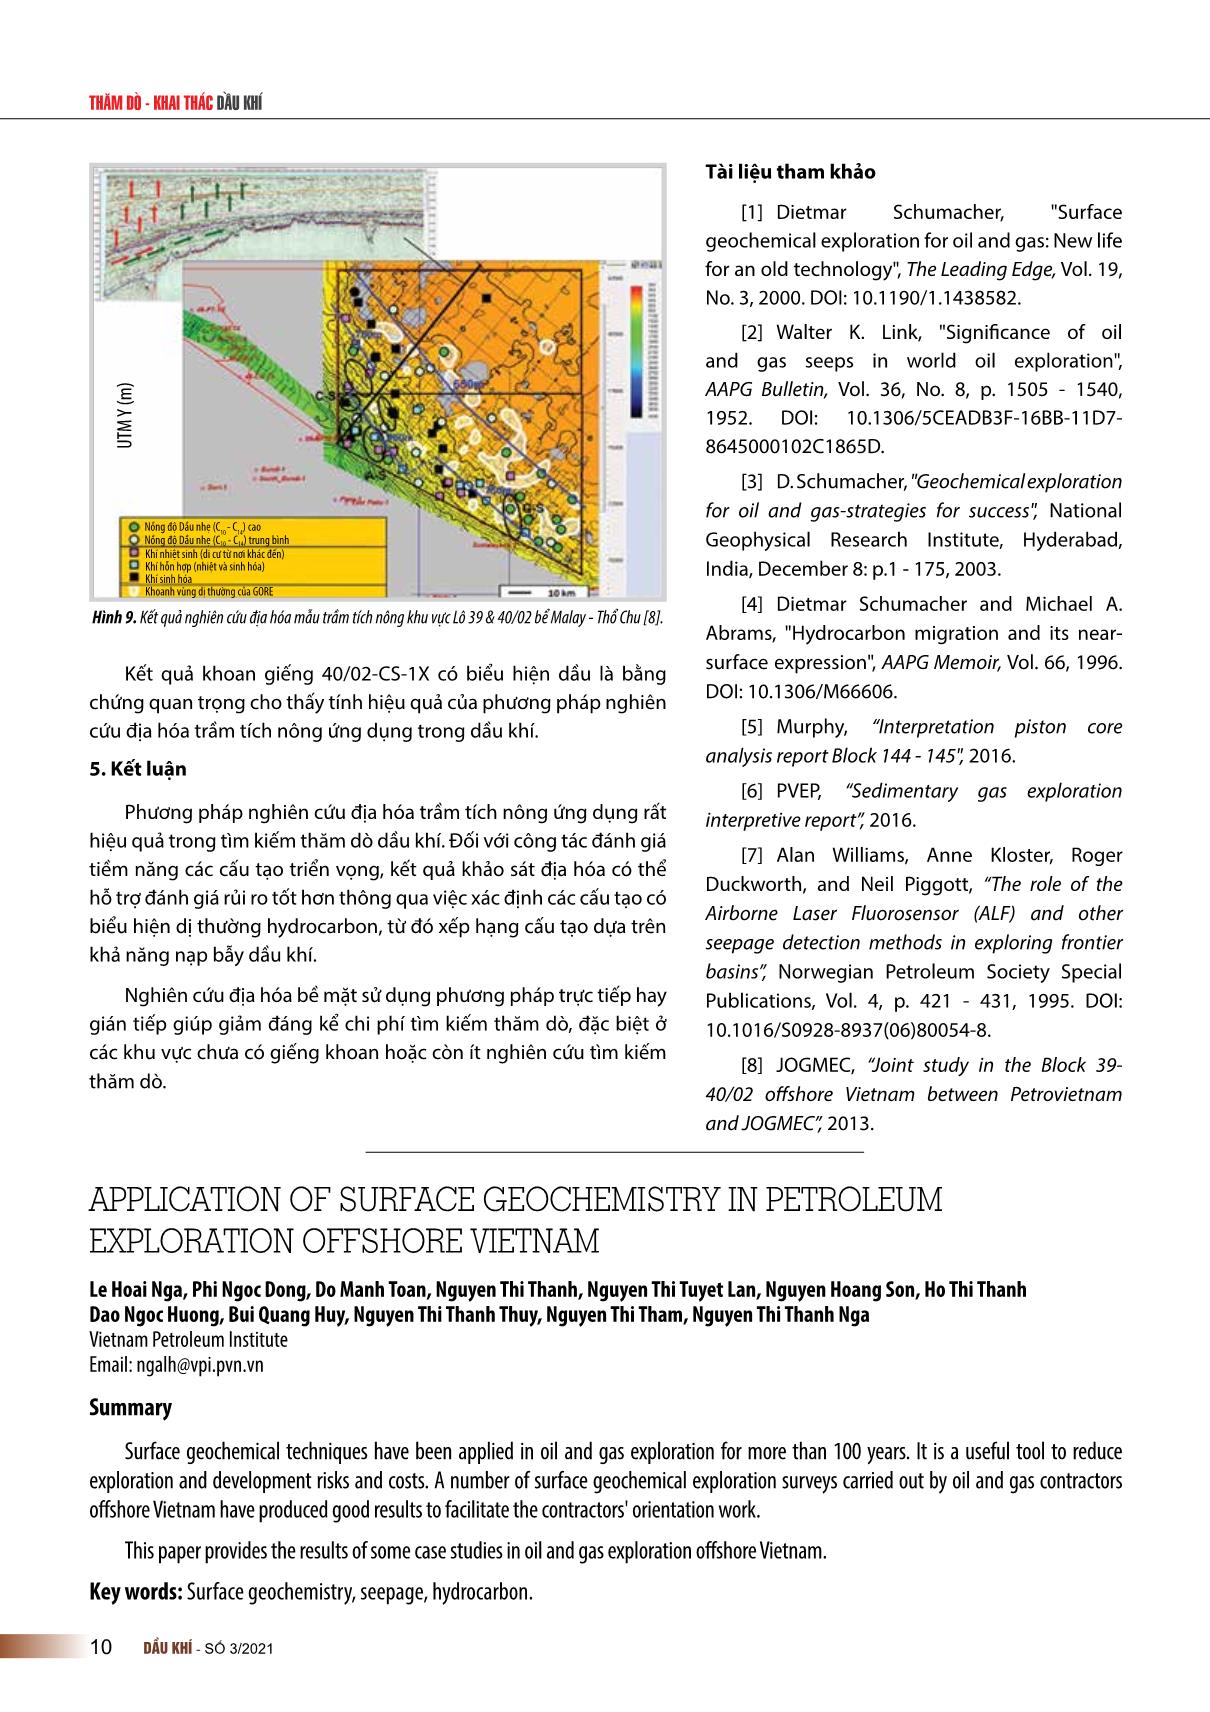 Ứng dụng nghiên cứu địa hóa trầm tích nông trong tìm kiếm thăm dò dầu khí trên biển và thềm lục địa Việt Nam trang 7